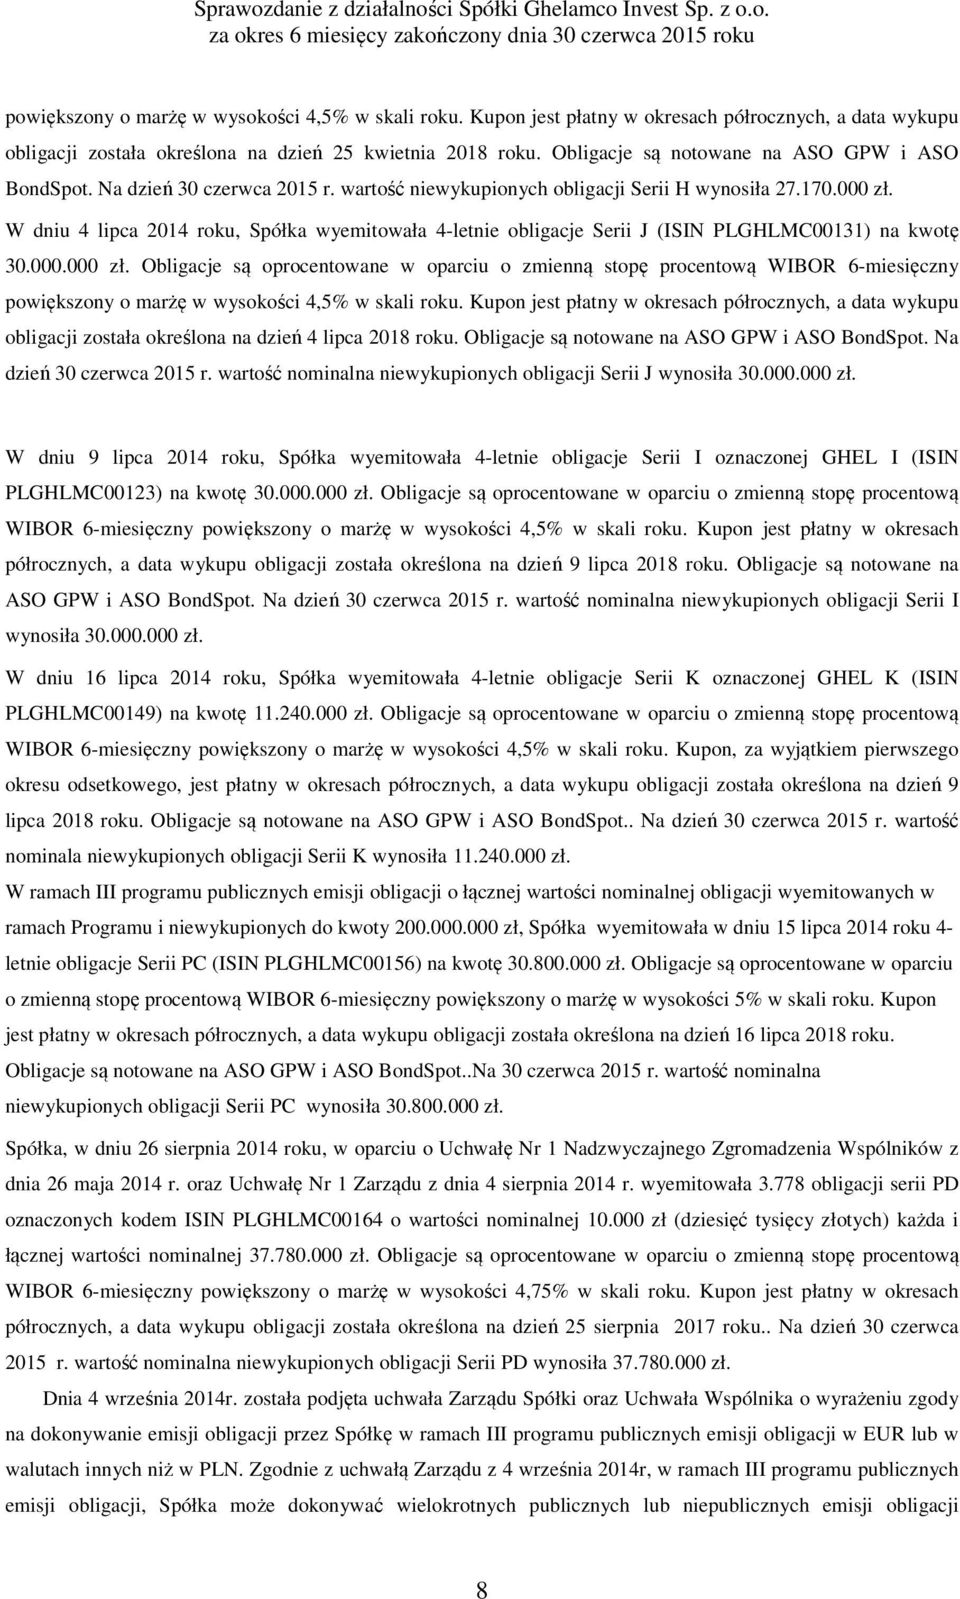 W dniu 4 lipca 2014 roku, Spółka wyemitowała 4-letnie obligacje Serii J (ISIN PLGHLMC00131) na kwotę 30.000.000 zł.